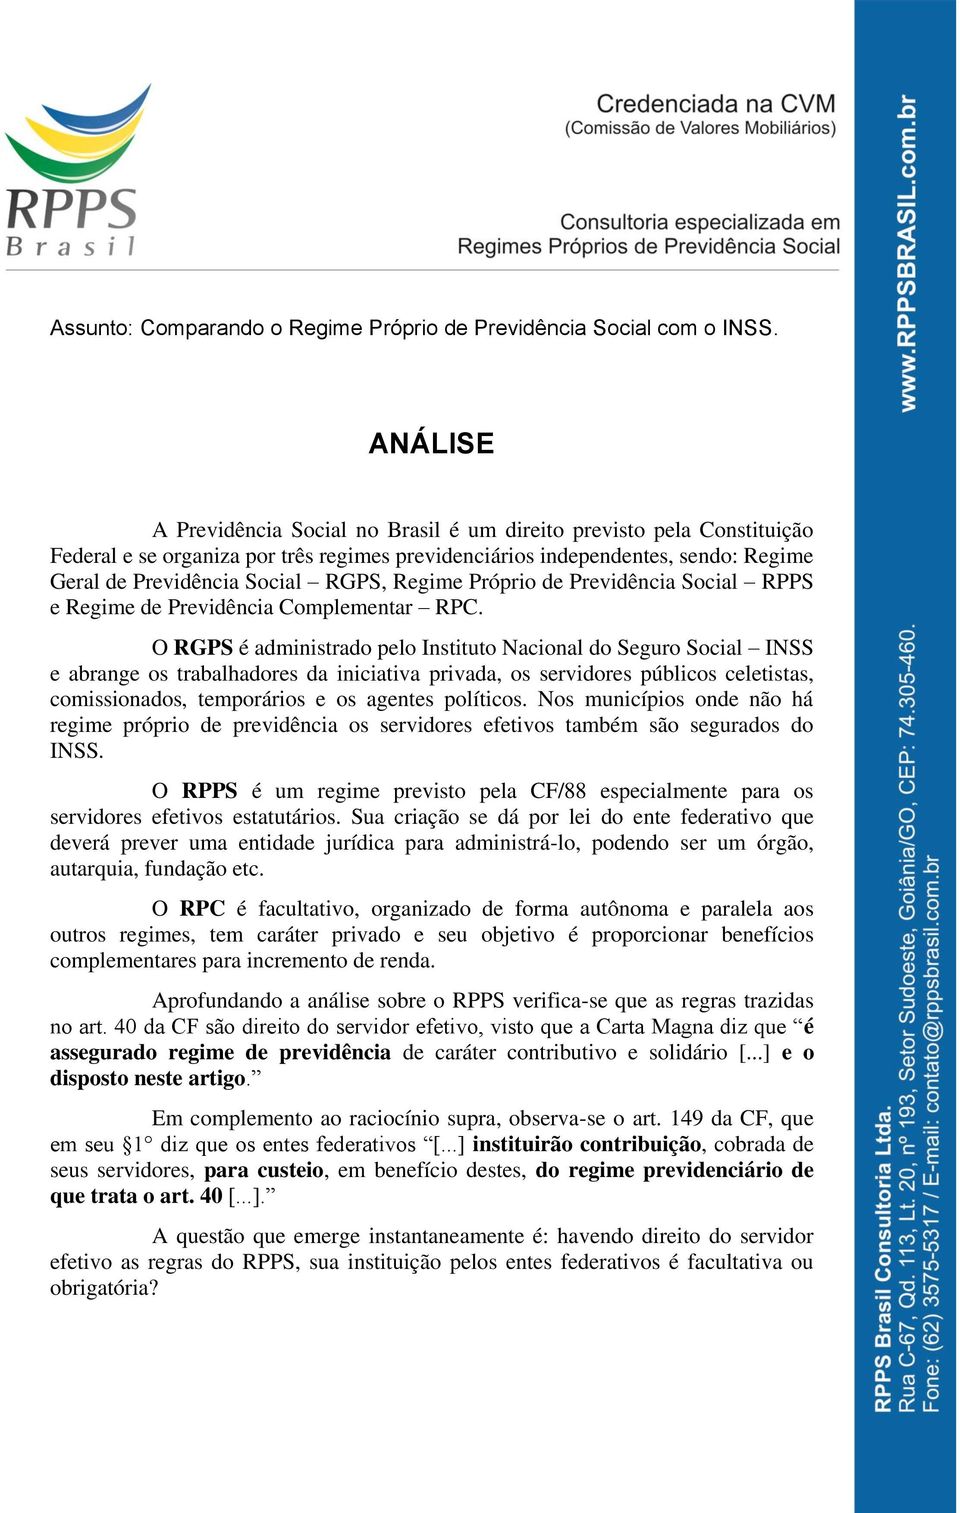 Regime Próprio de Previdência Social RPPS e Regime de Previdência Complementar RPC.